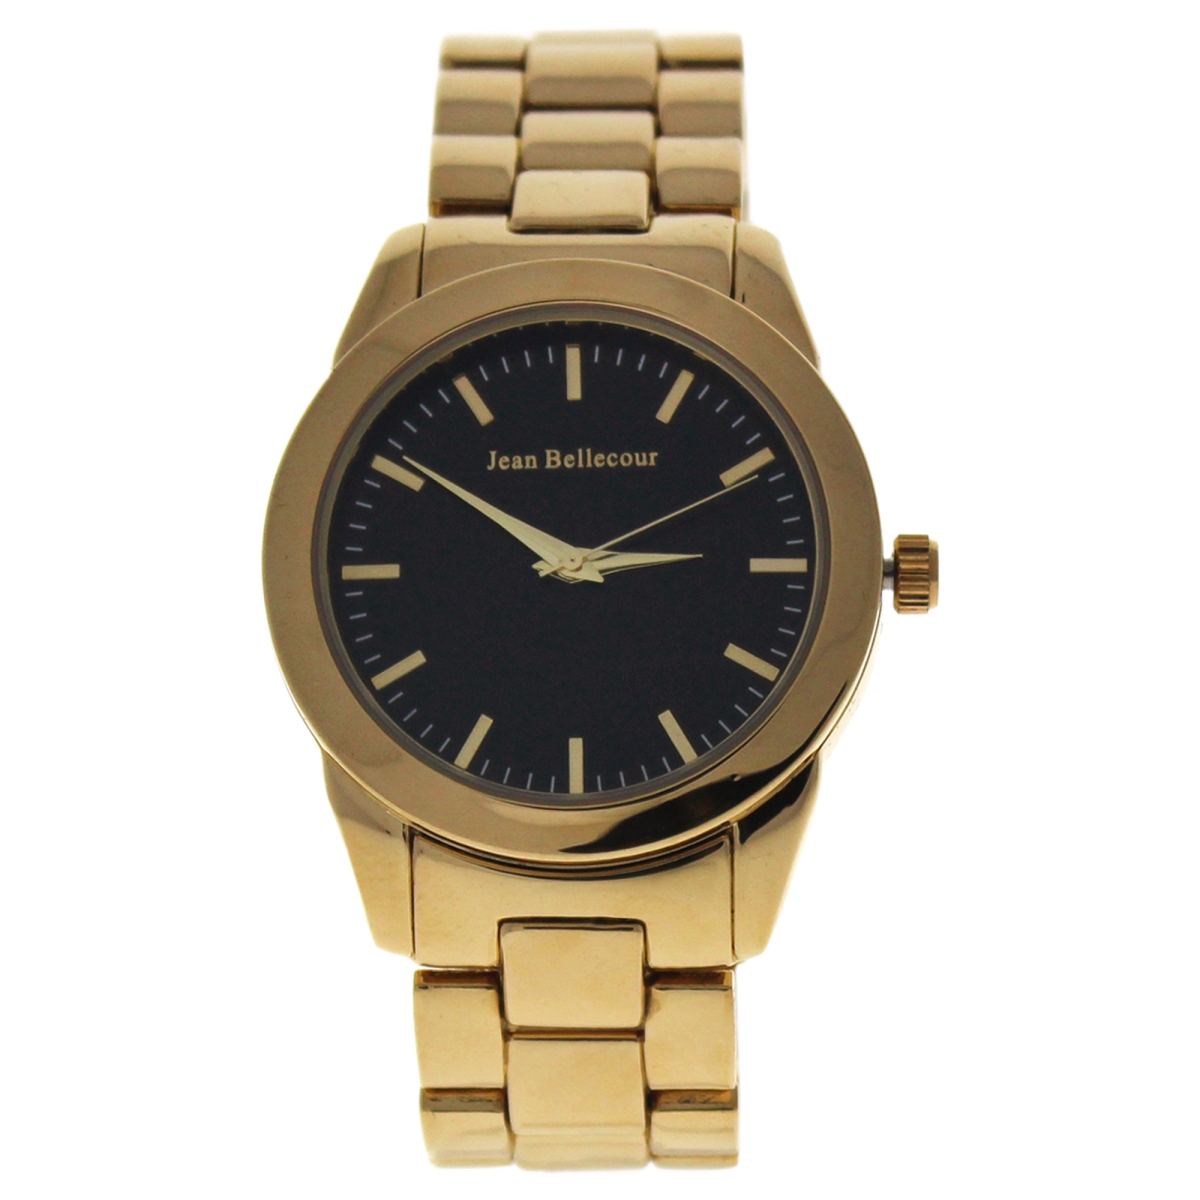 Picture of Jean Bellecour W-WAT-1537 Gold Stainless Steel Bracelet Watch for Women - A0372-4